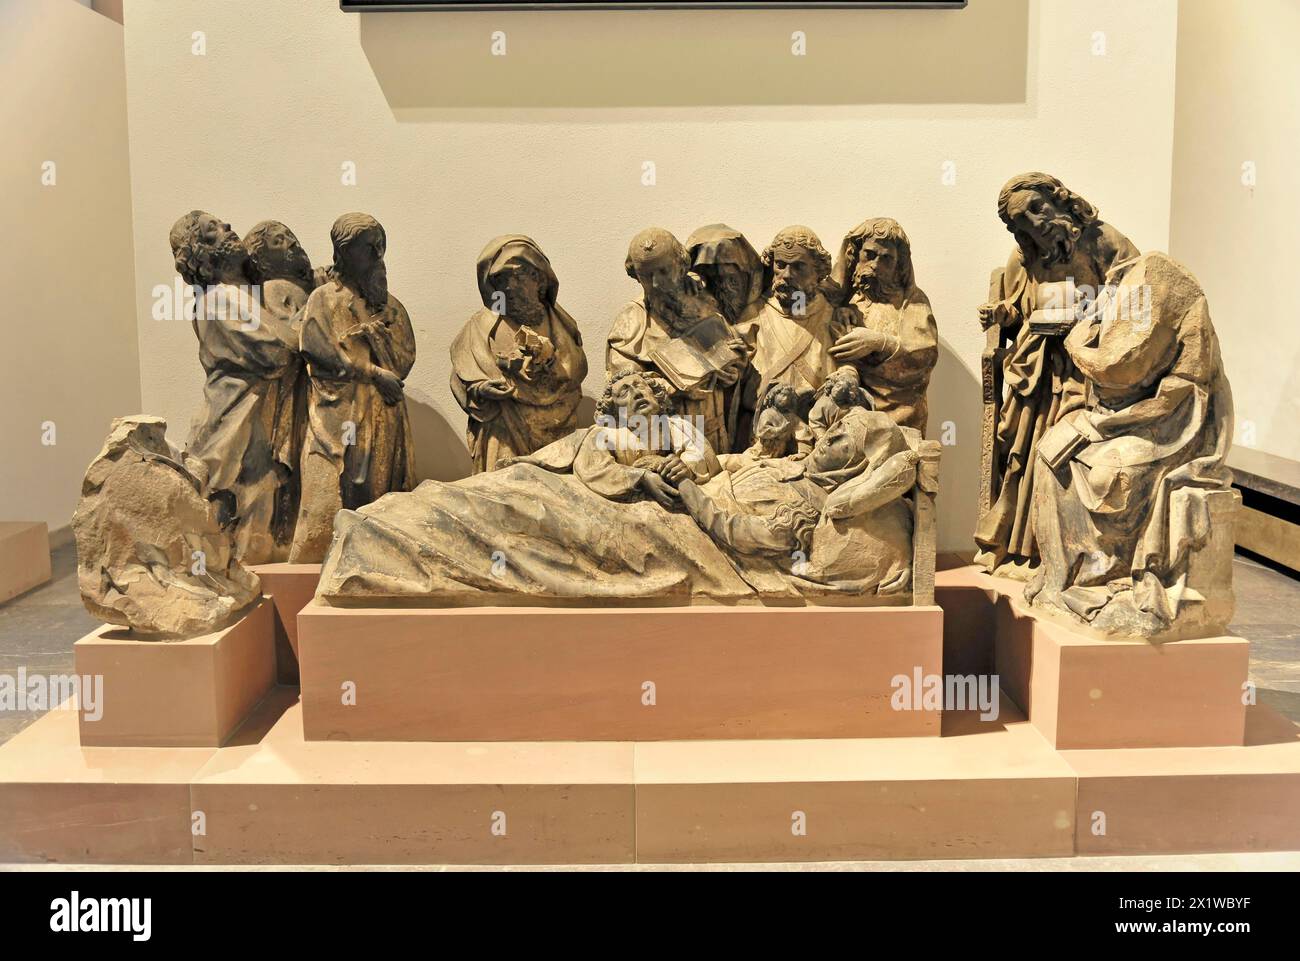 Cathédrale Saint-Kilian, cathédrale Saint-Kilian, Wuerzbourg, Un groupe de sculptures sculptées sur bois montre une scène de deuil biblique, peut-être la Lamentation de Banque D'Images